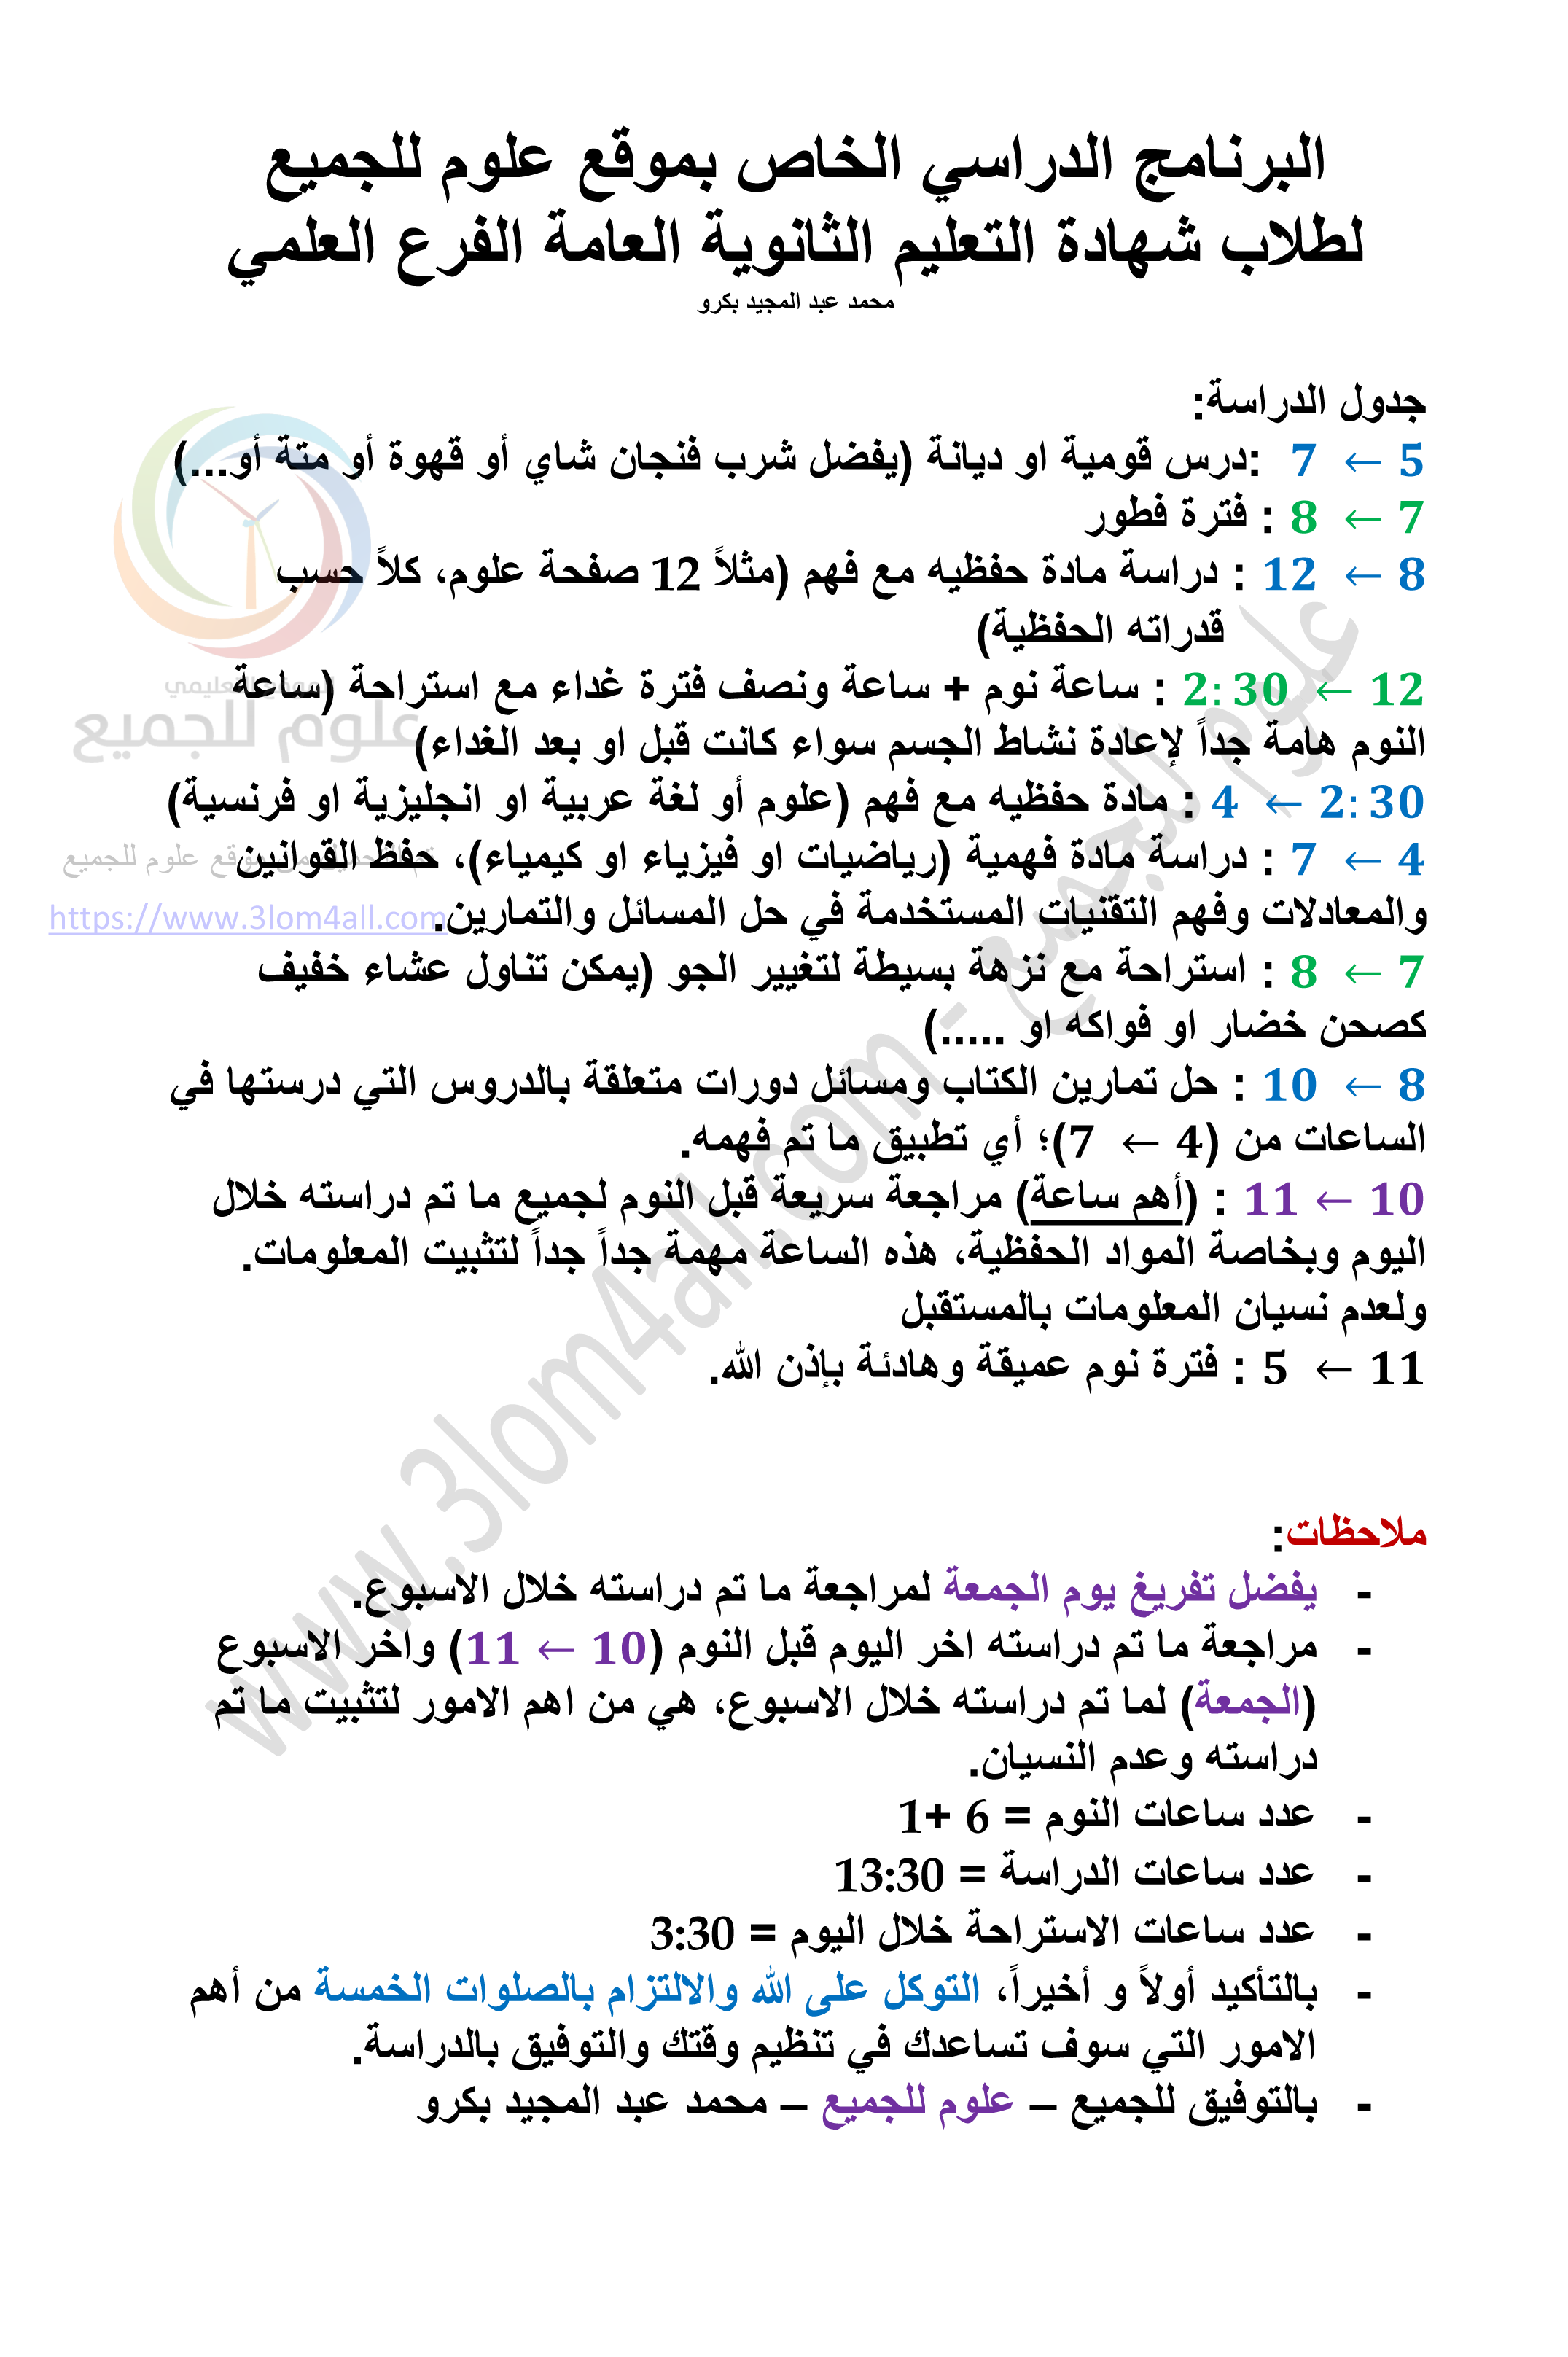 برنامج دراسة للبكالوريا العلمي 2019 خلال فترة الانقطاع سوريا - برنامج علوم للجميع 